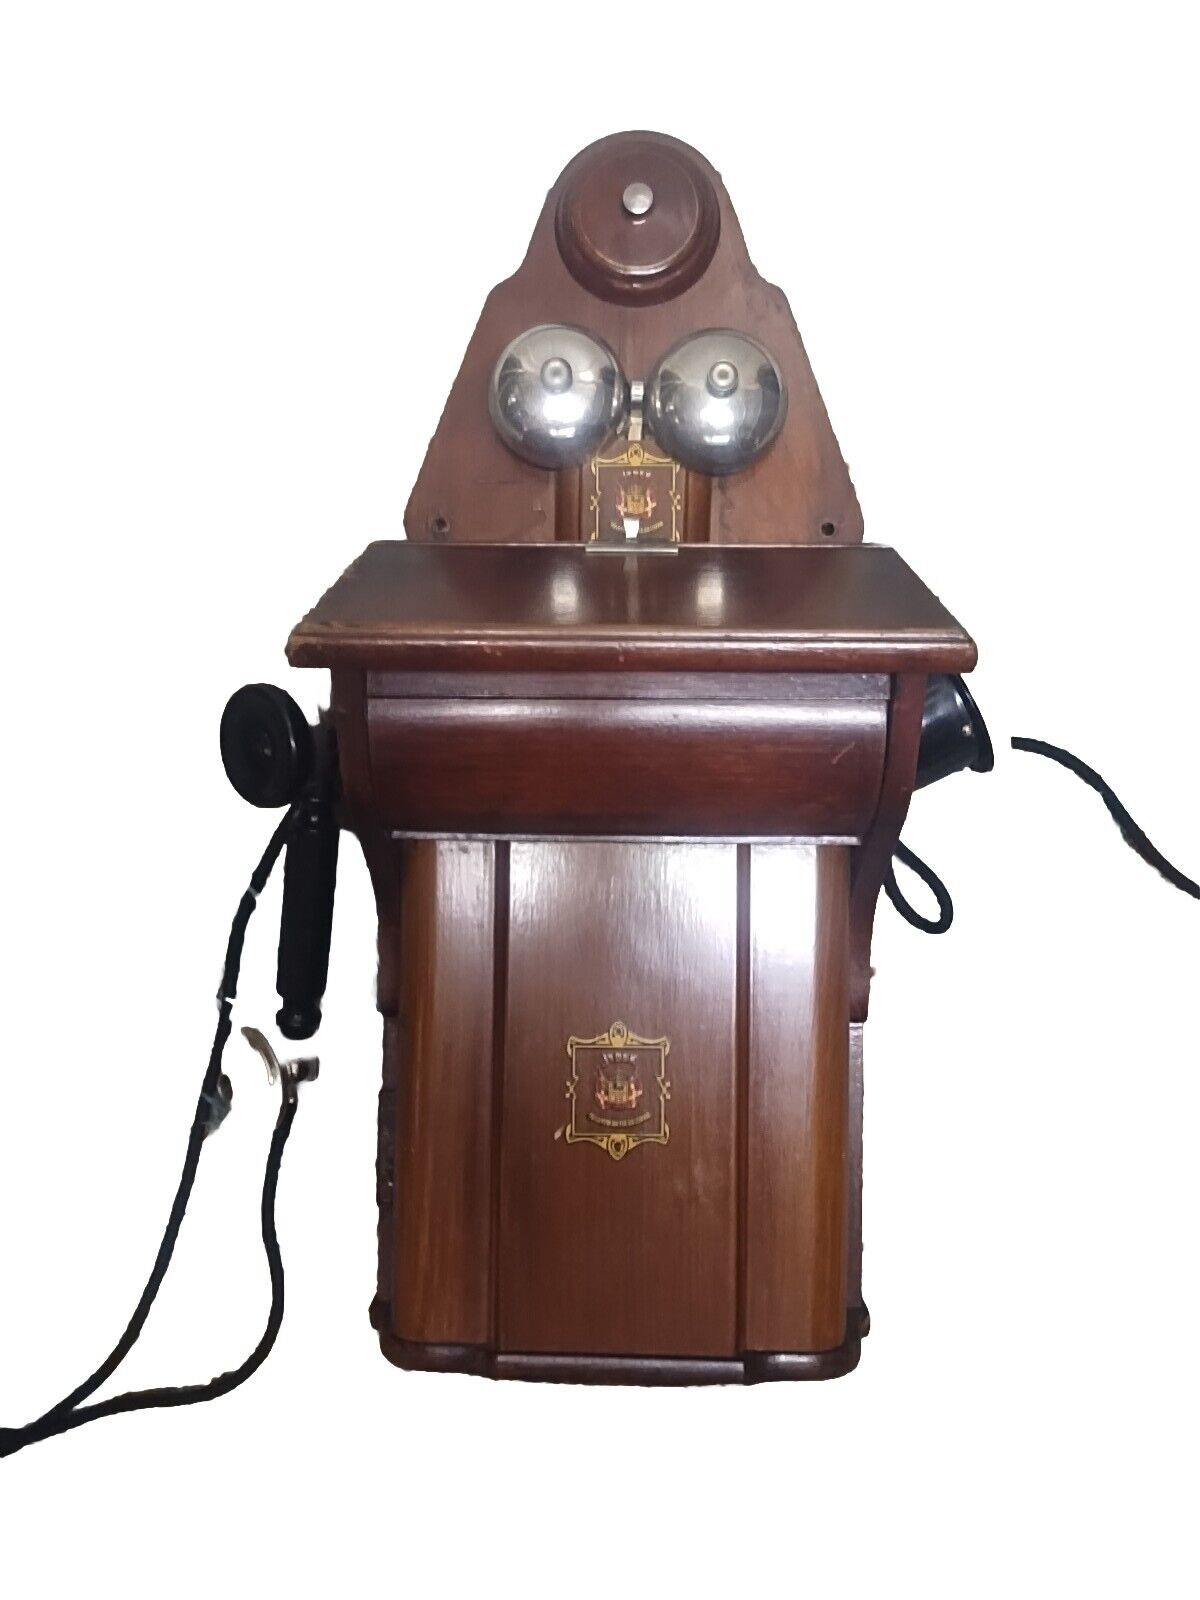 JYDSK Antique Wooden Wall Phone Telefon Aktieselskab Norway Working Phone Rare